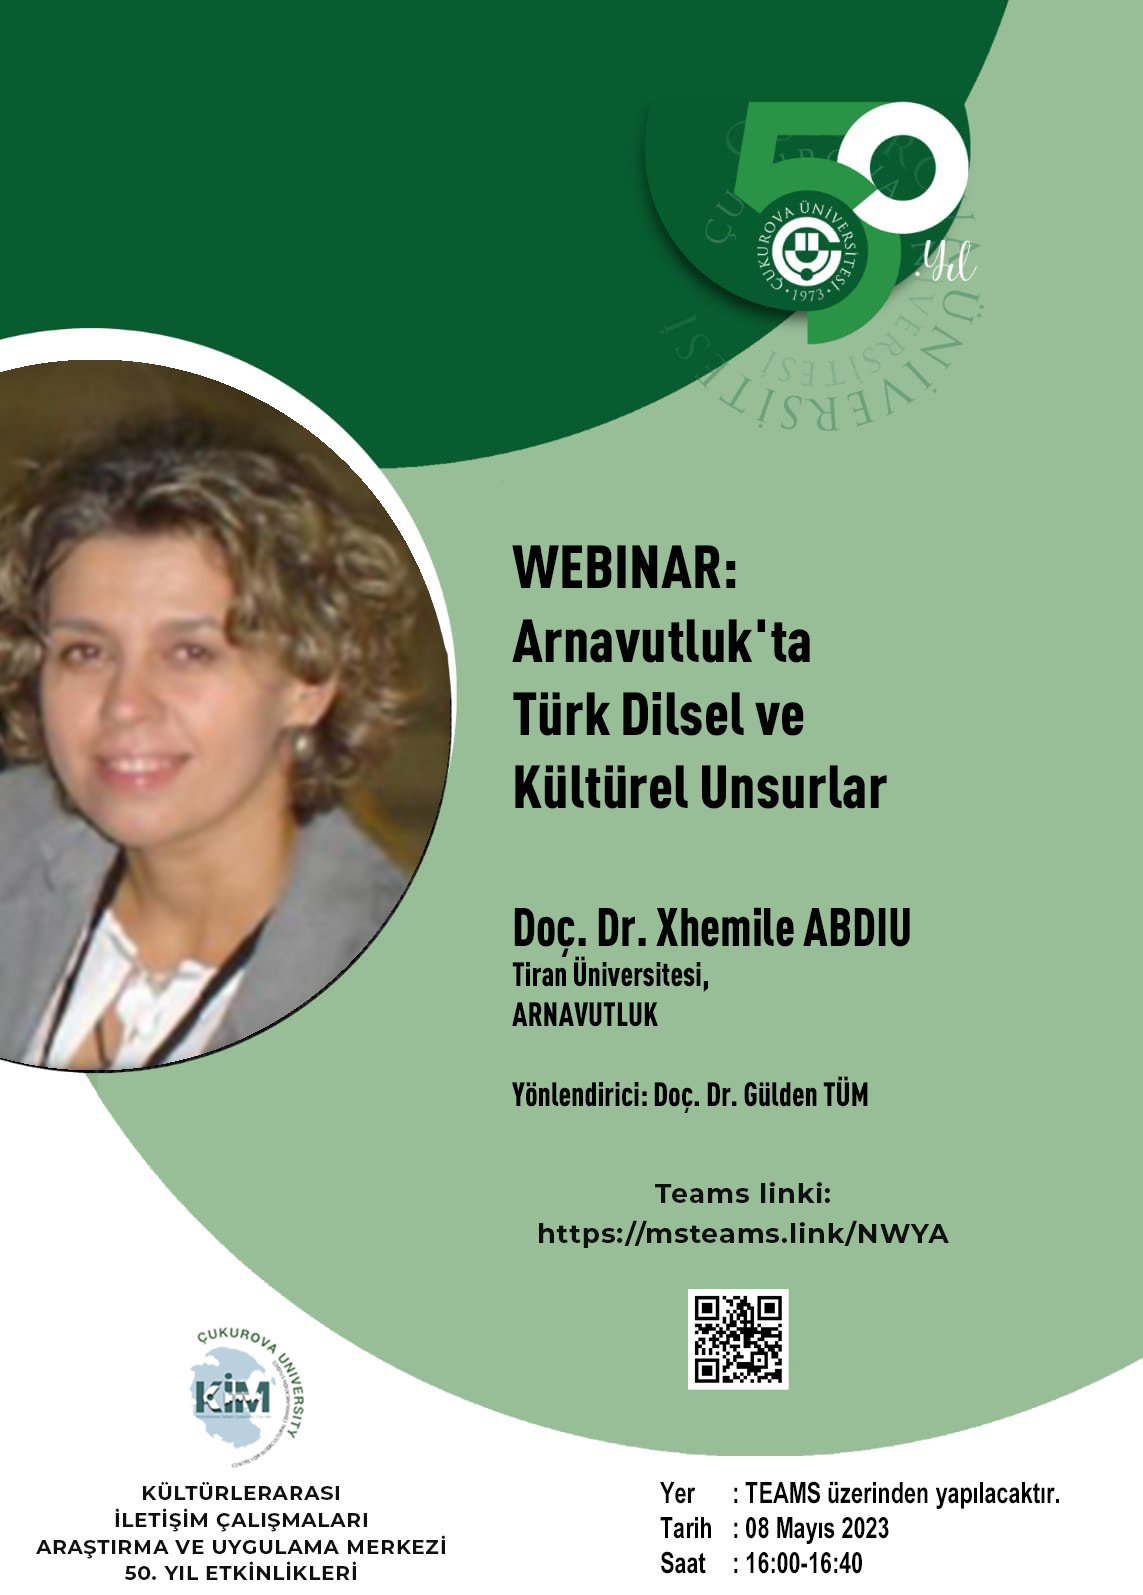 KİM Webinar: Xhemile Abdiu - "Arnavutluk'ta Türk Dilsel ve Kültürel Unsurlar"